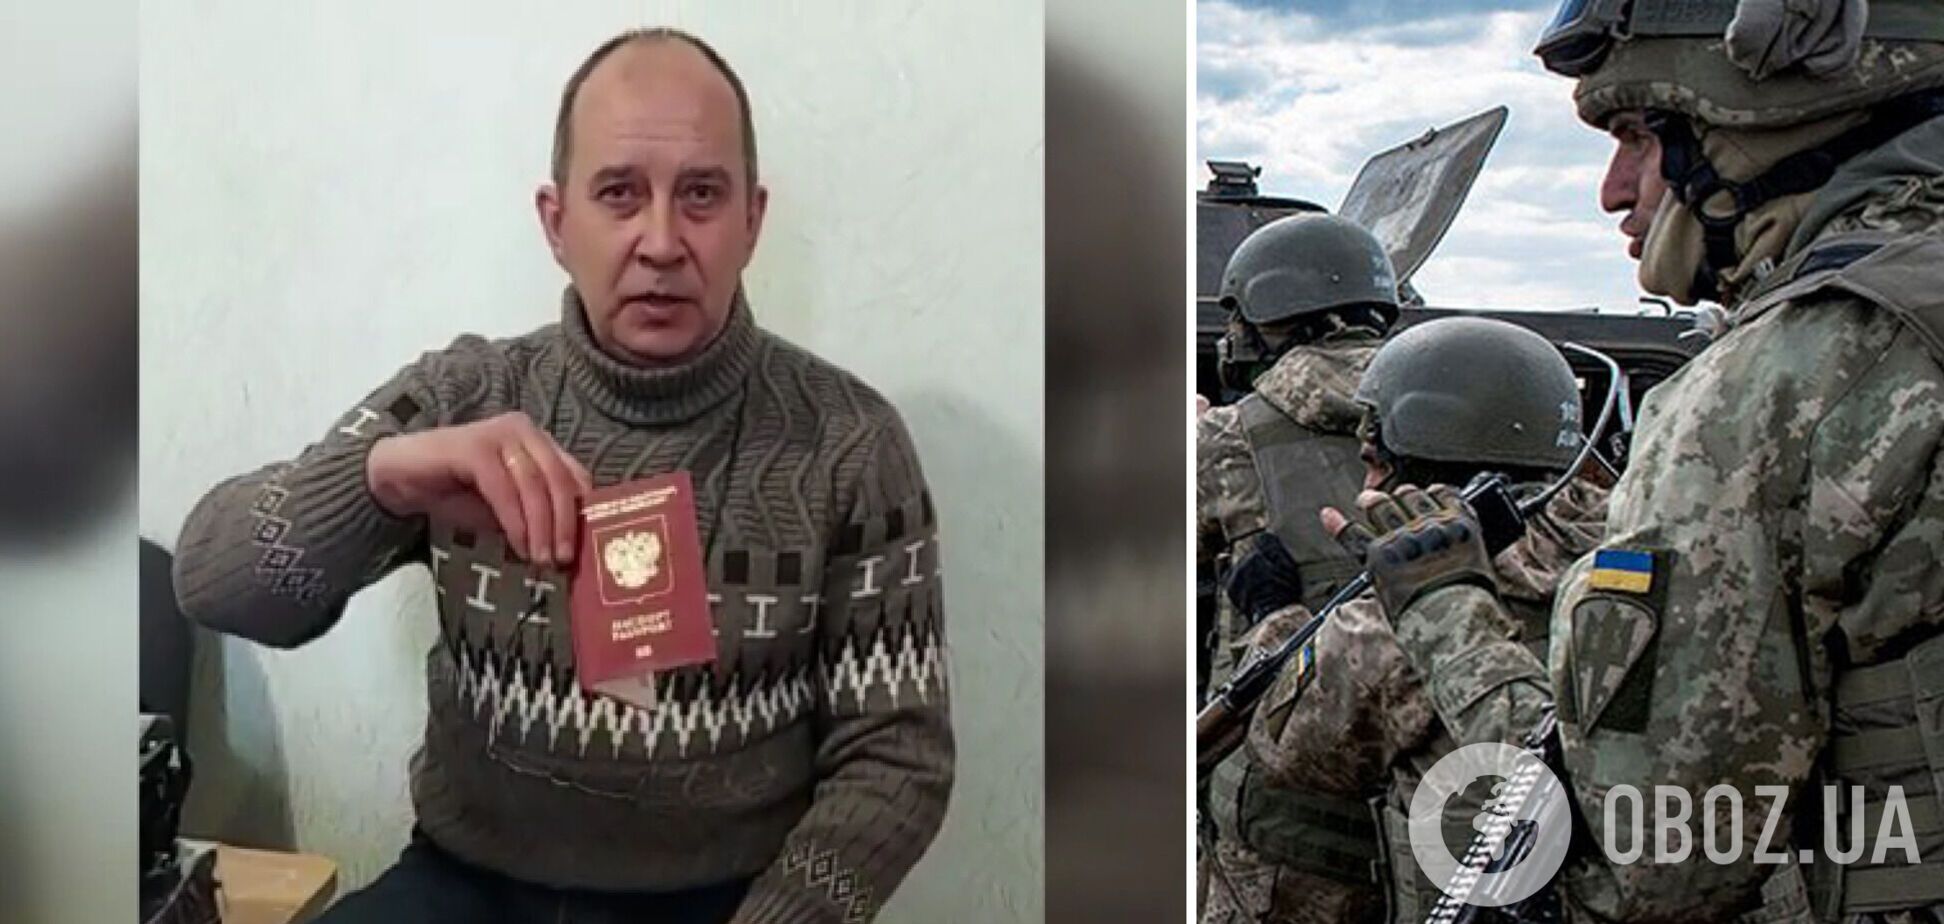 Корінний росіянин прийшов до СБУ та заявив про бажання воювати за Україну. Відео